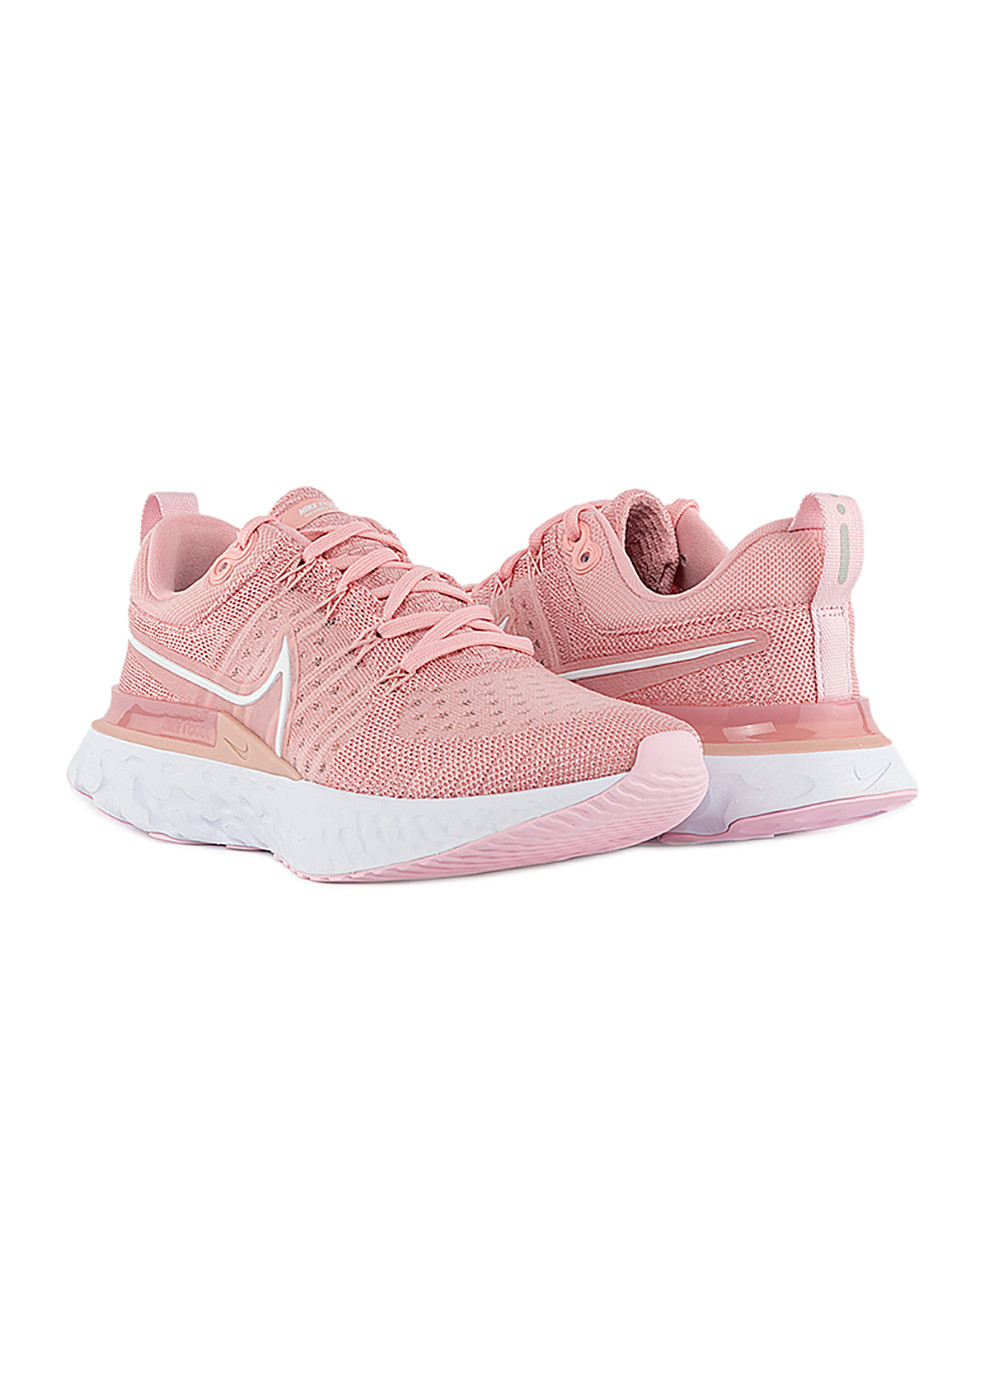 Розовые демисезонные женские кроссовки w react infinity run fk 2 розовый Nike